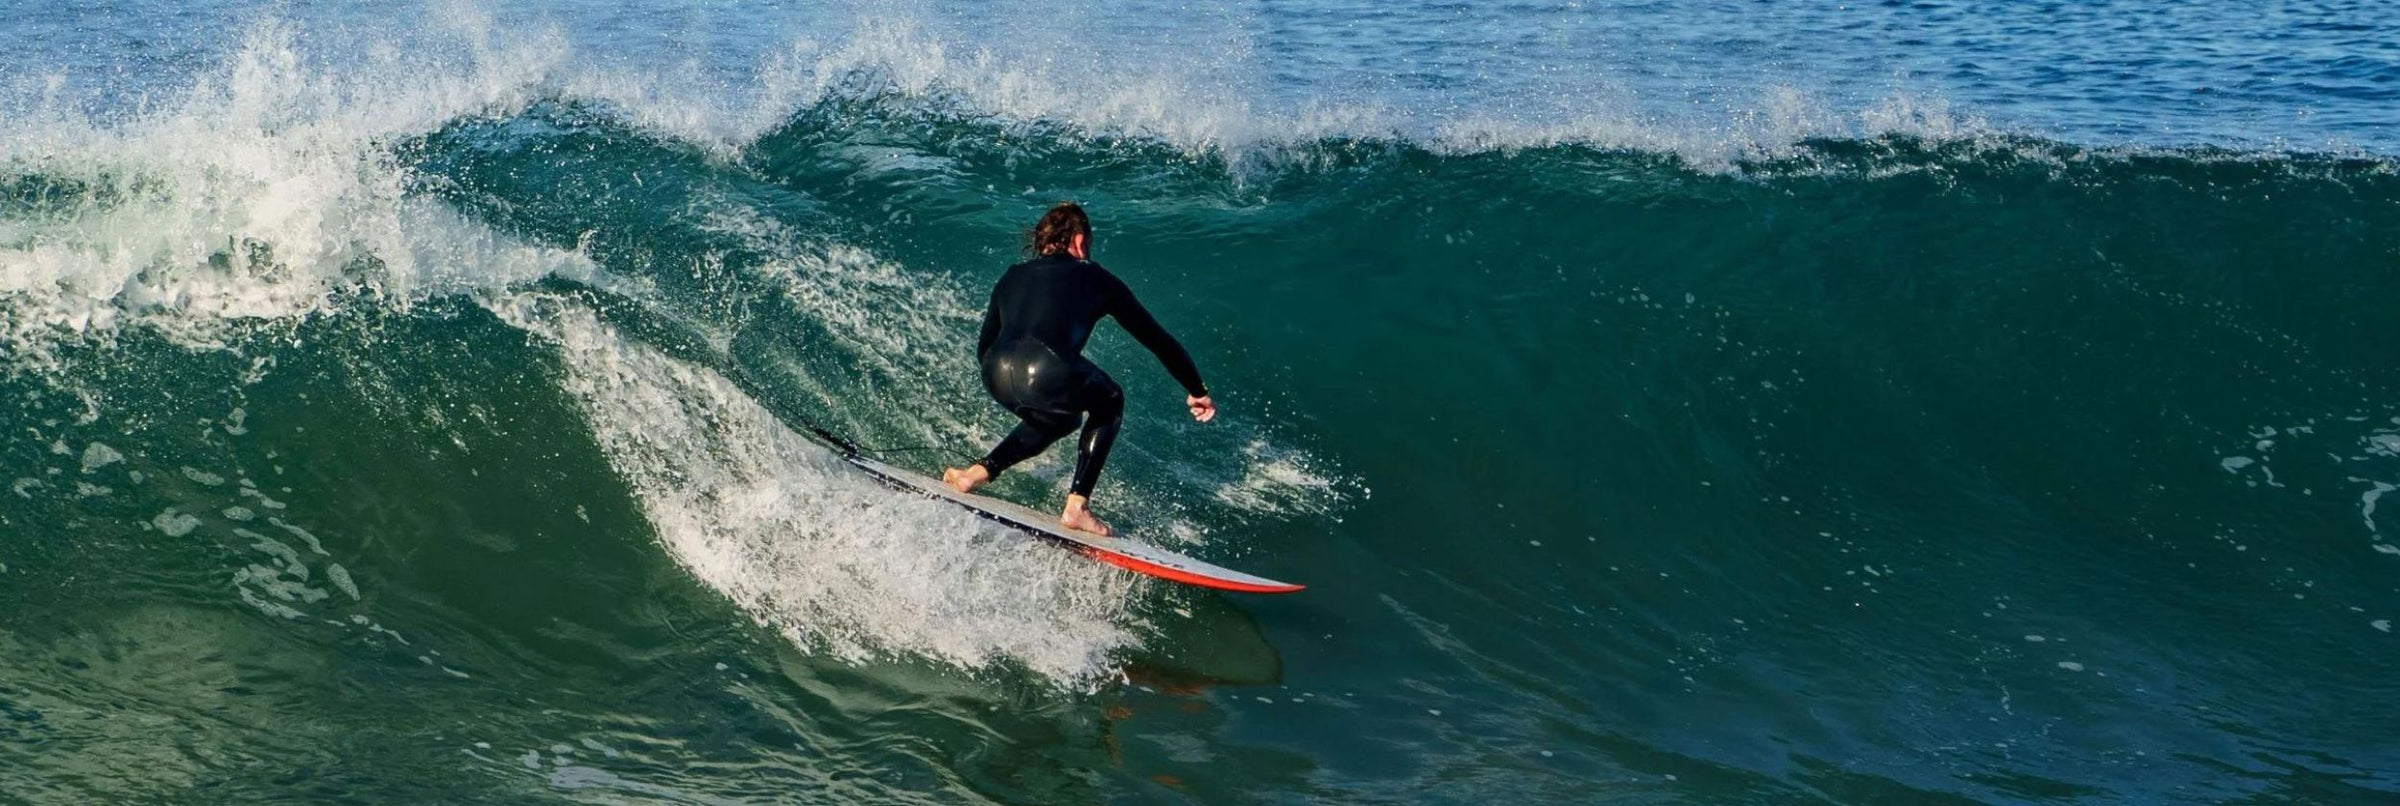 Surfeur sur une vague frontside